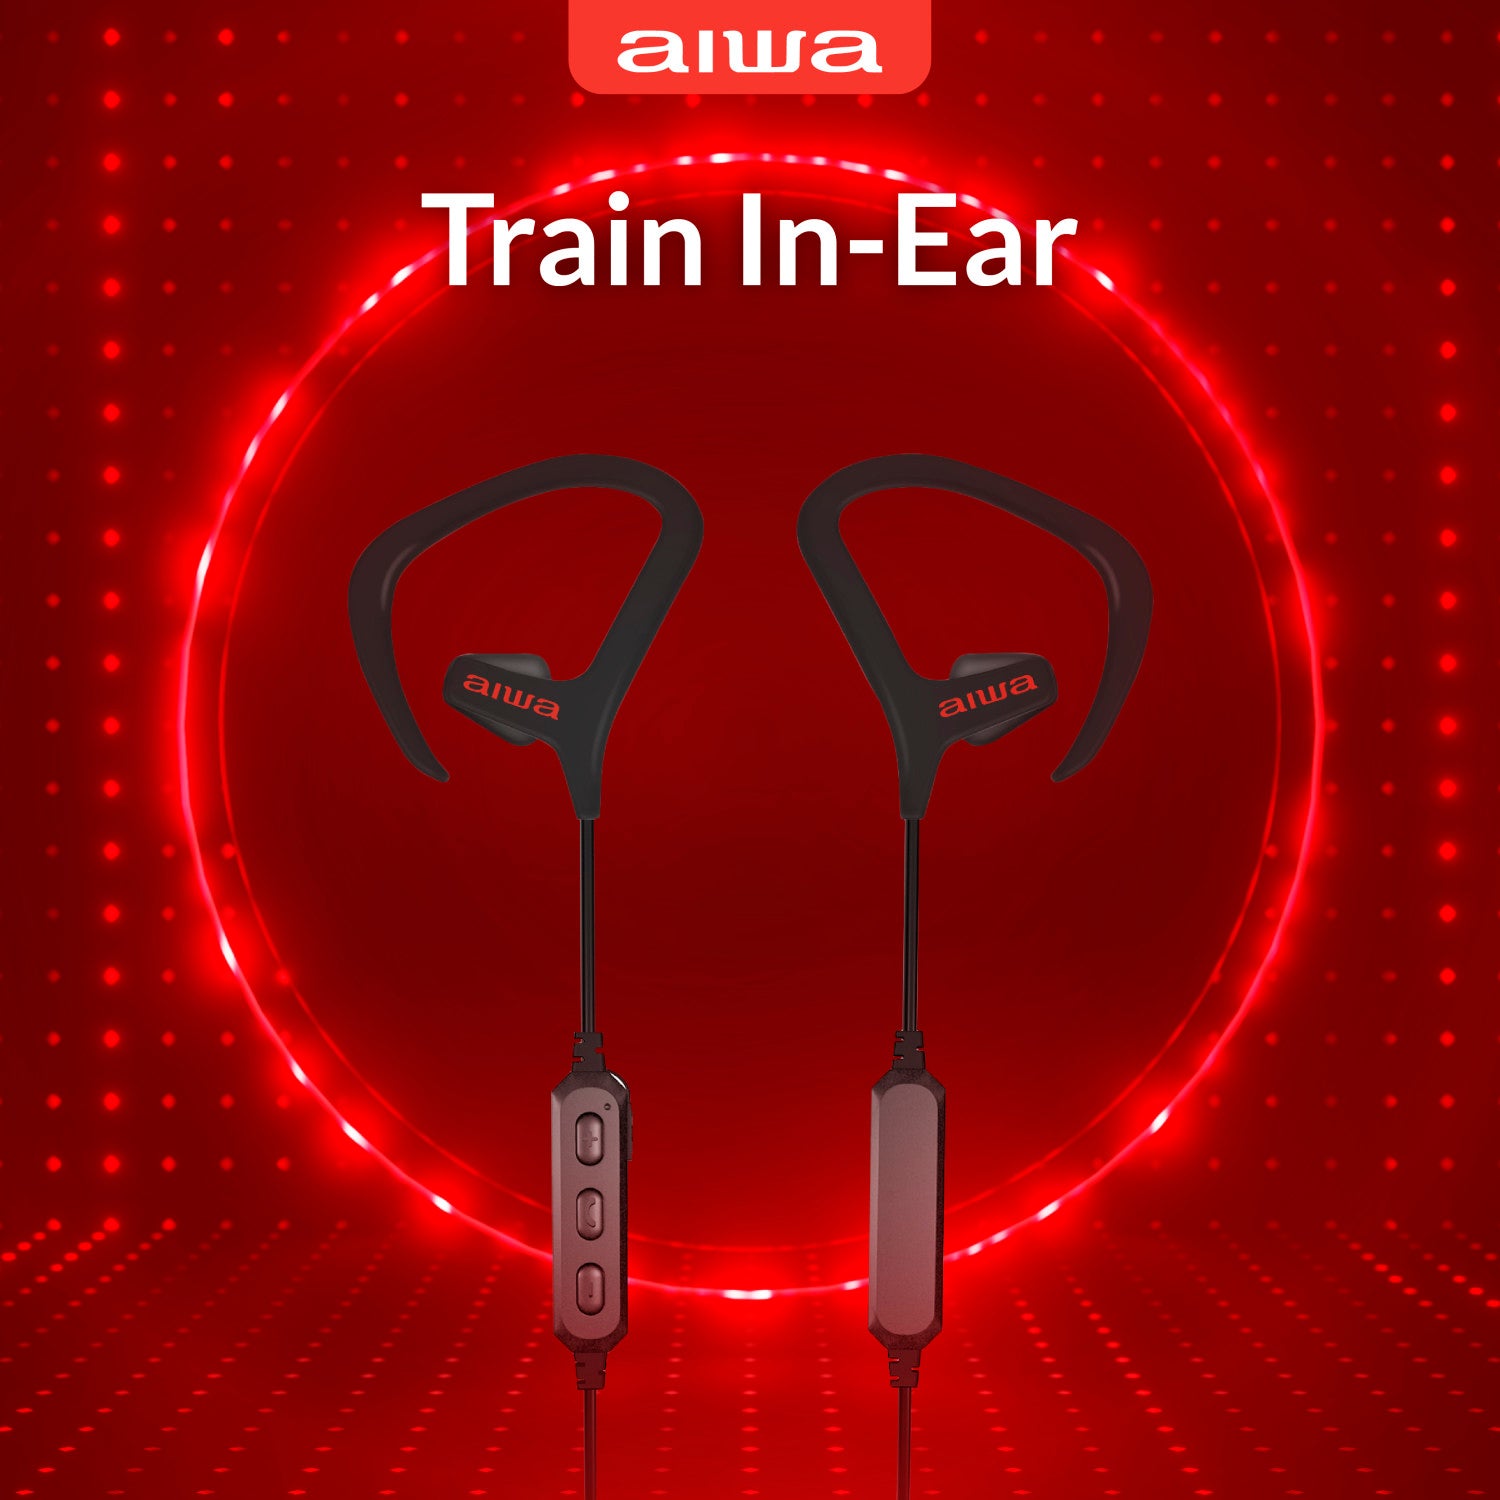 Train In-Ear Wireless Earphones